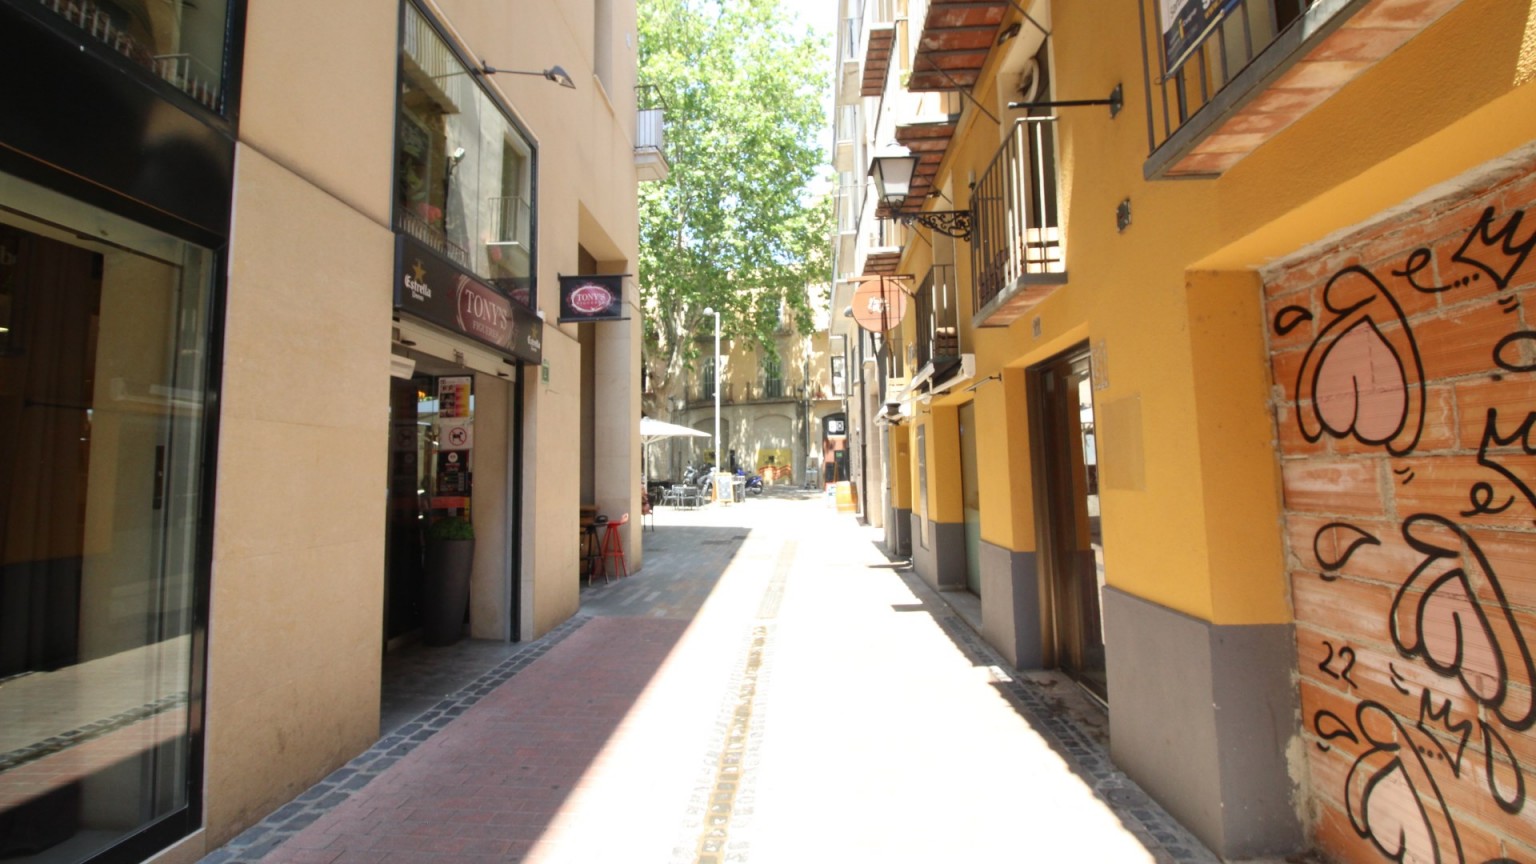 Local  de alquiler de 100m2 en el centro de Figueres. Situación ideal para montar tu negocio.